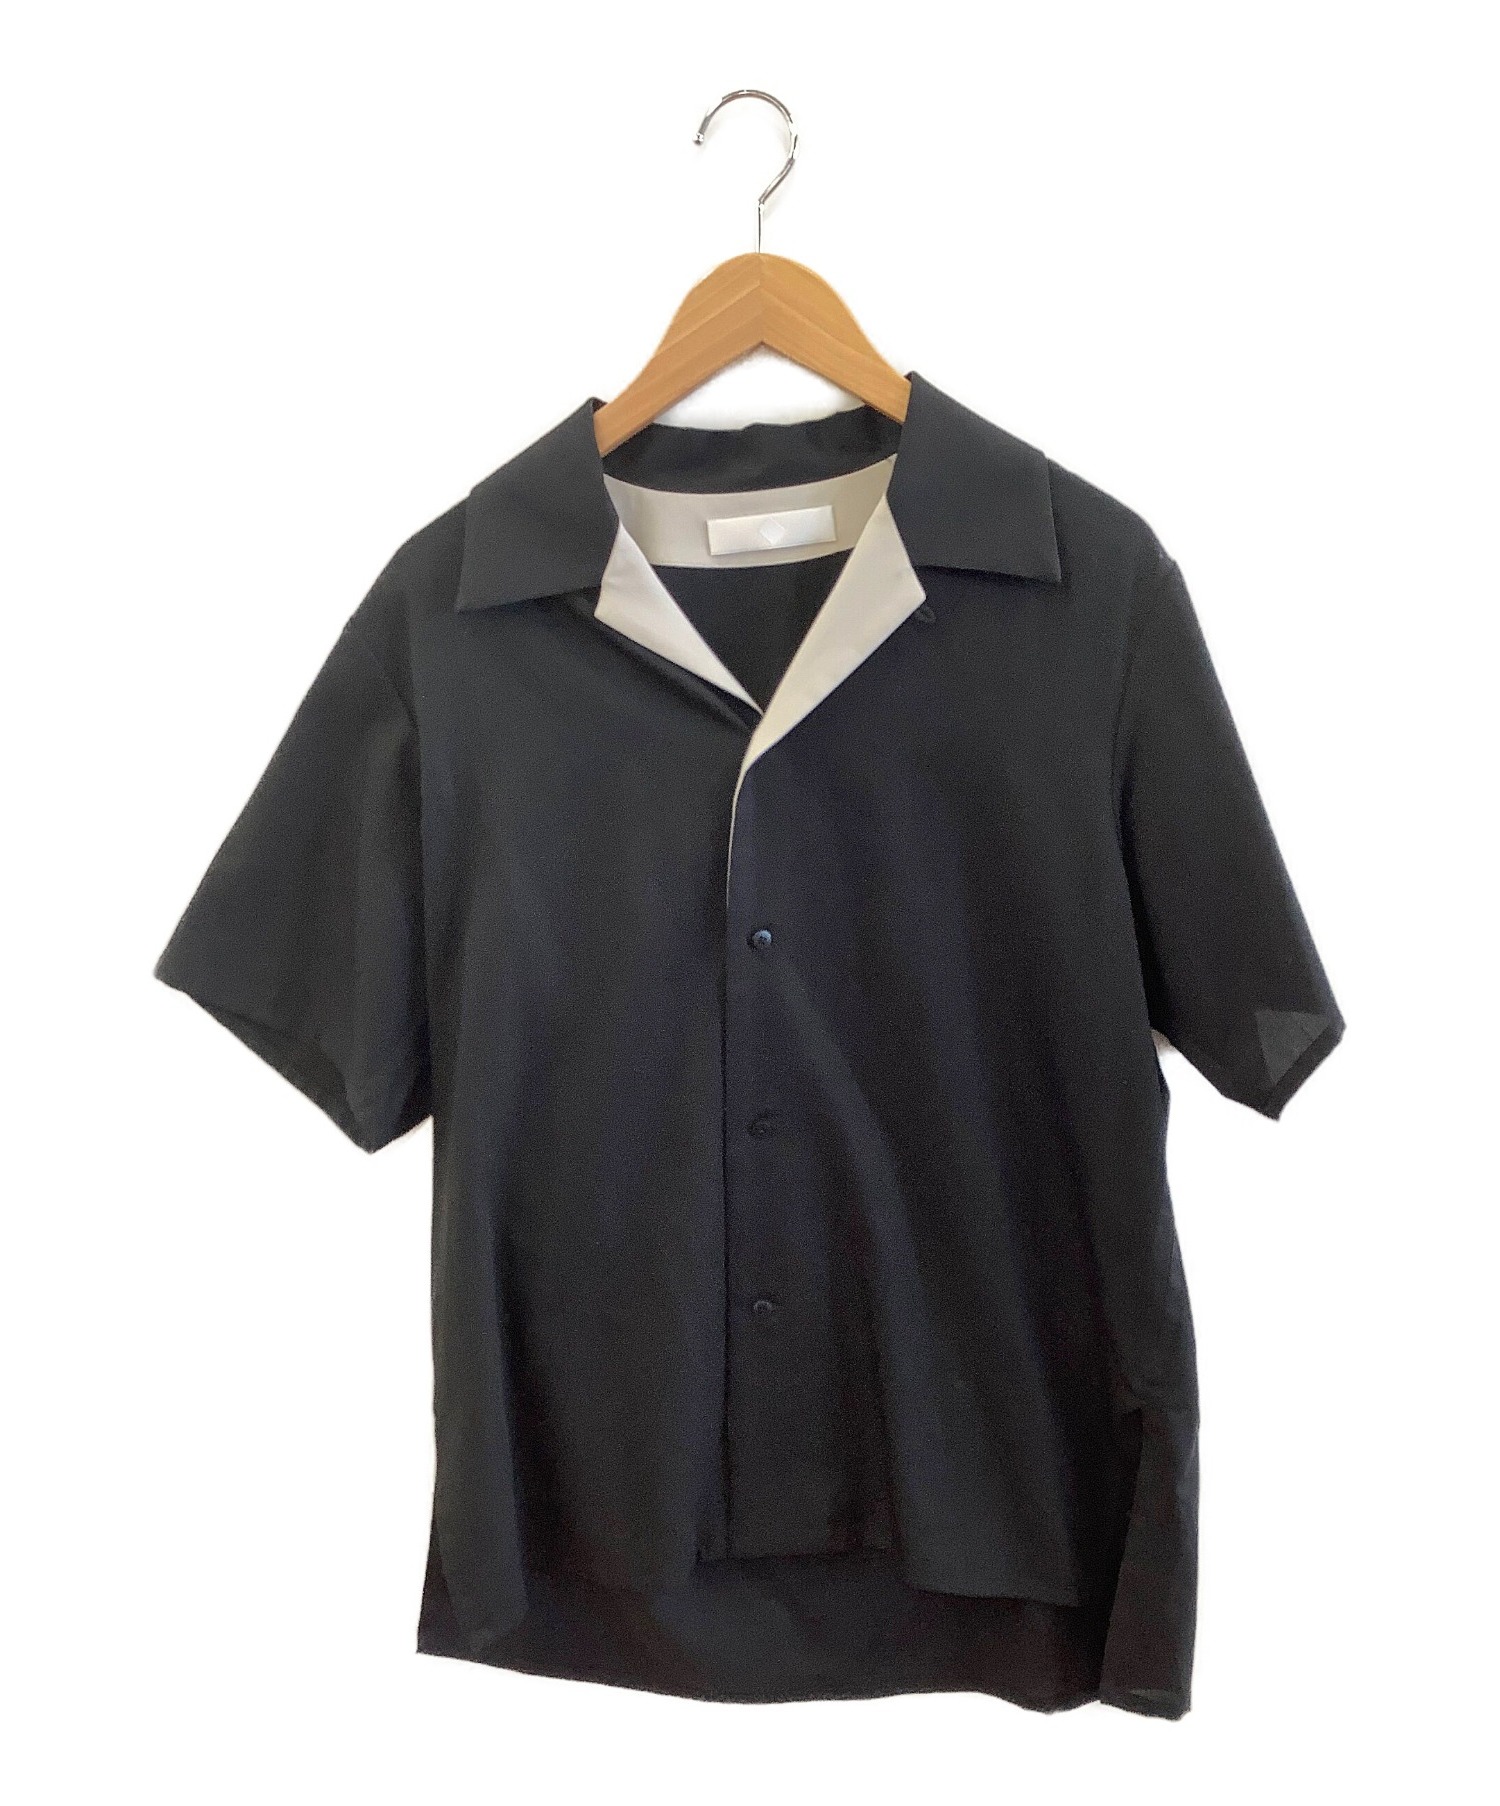 ETHOSENS (エトセンス) オープンカラーシャツ ブラック サイズ:SIZE 1 ES120-21